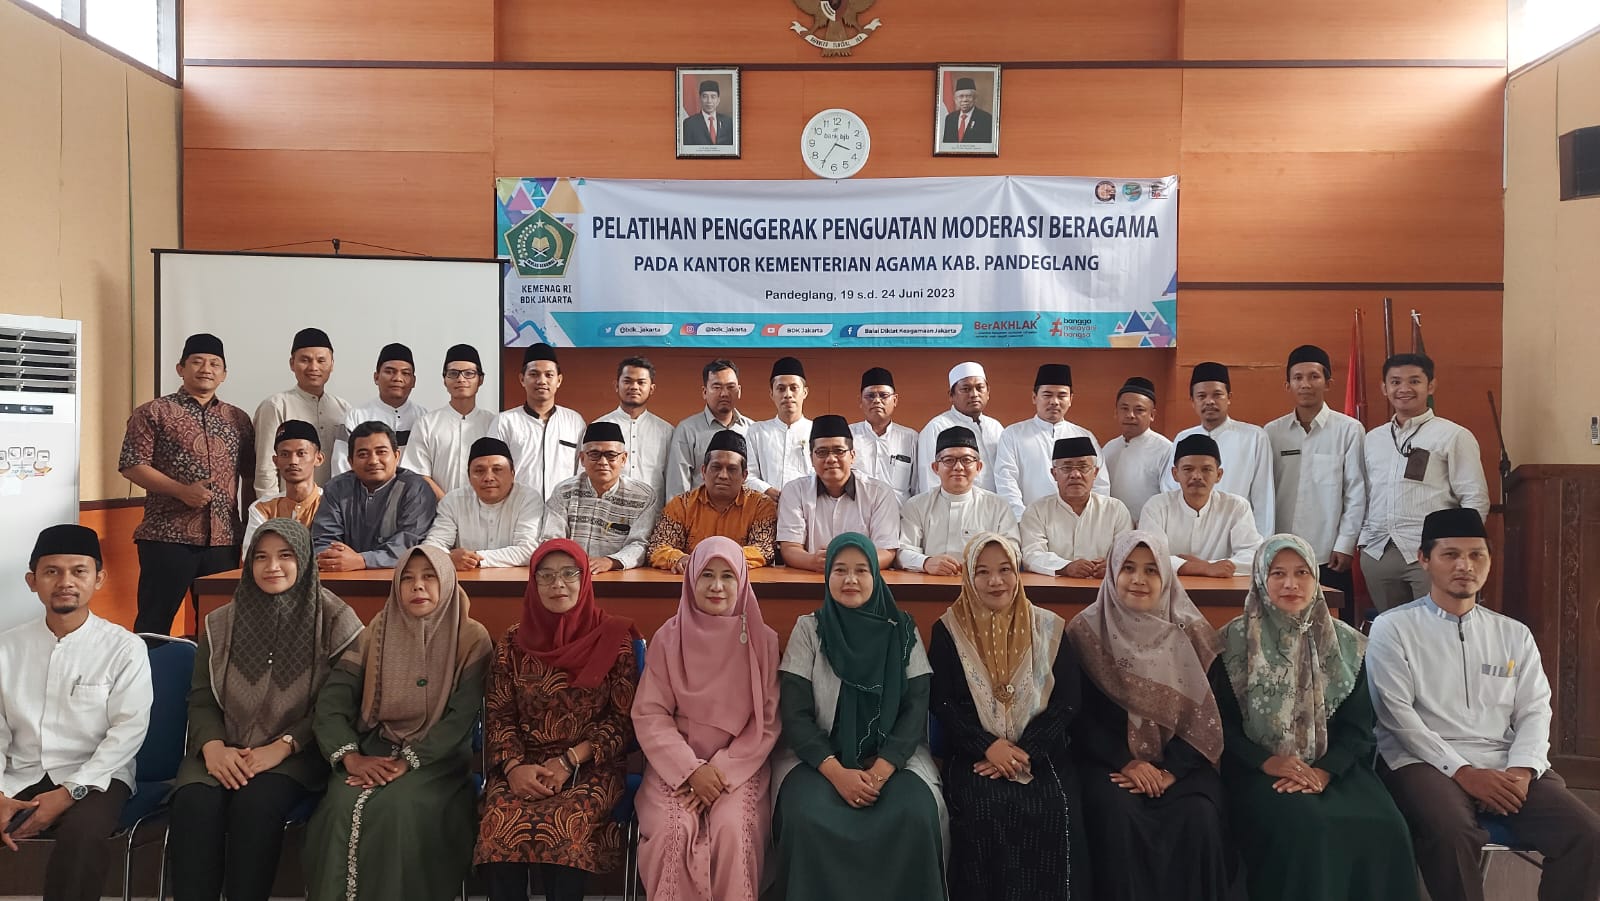 Penyuluh Agama di Banten Jadi Penggerak Moderasi Beragama di Masyarakat